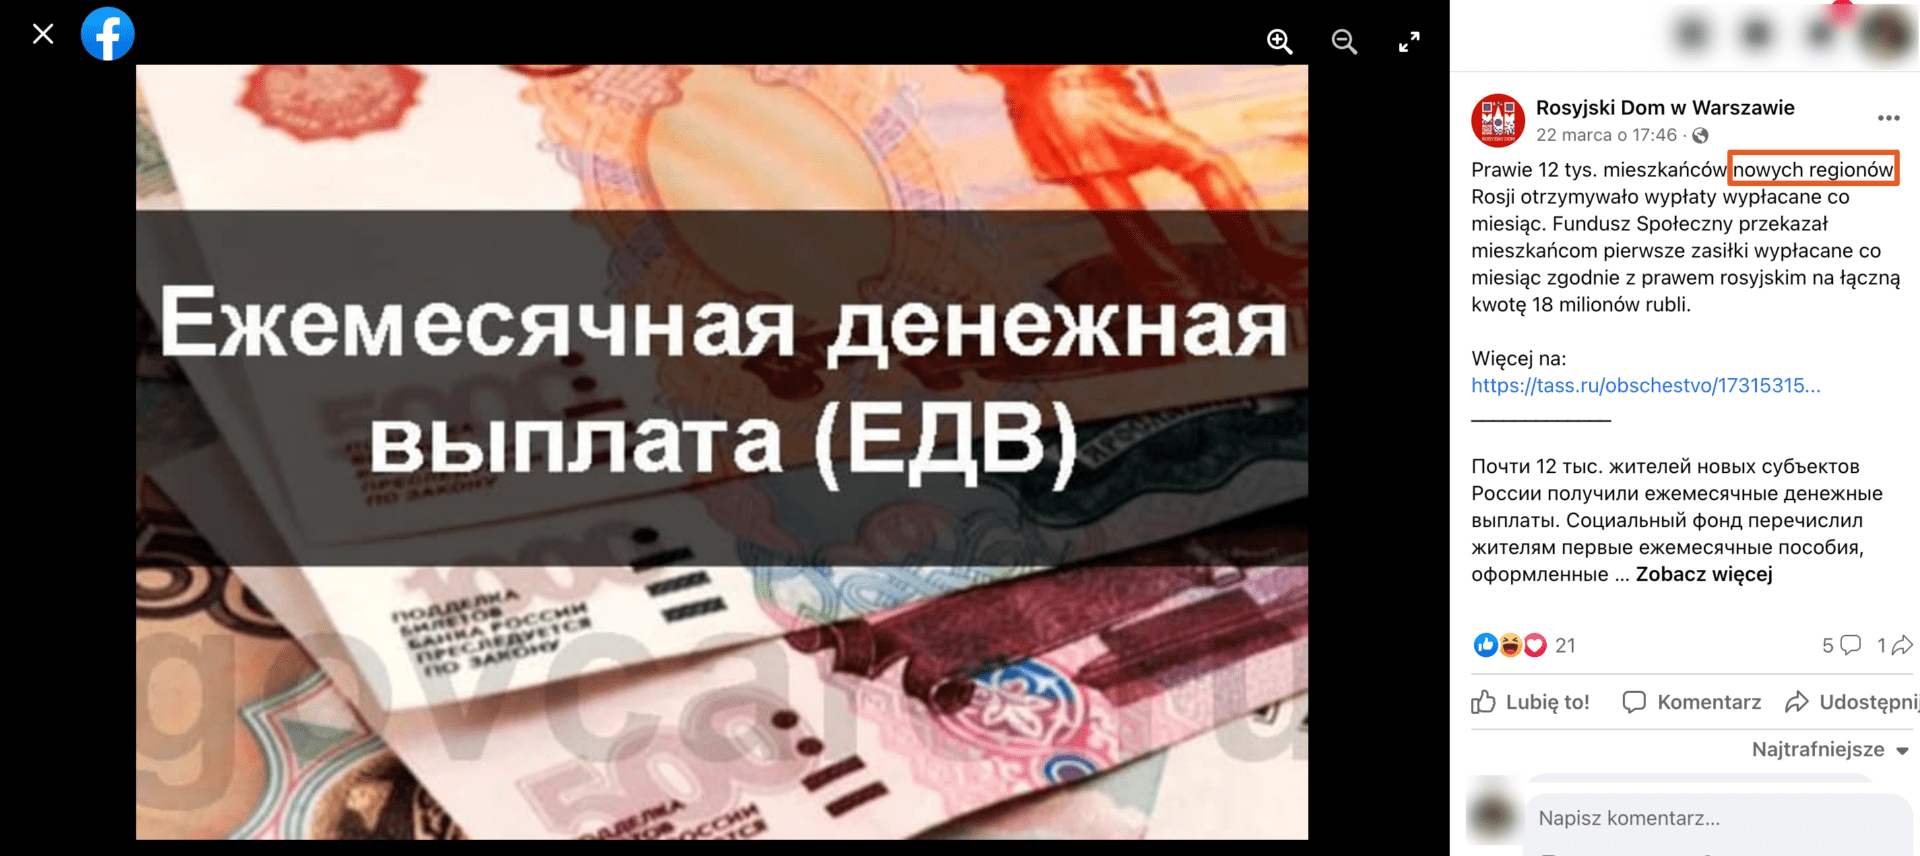 Zrzut ekranu posta na Facebooku opublikowany przez Rosyjski Dom w Warszawie, w którym tereny Ukrainy określone są „nowymi regionami Rosji”. Widoczne jest zdjęcie pieniędzy.